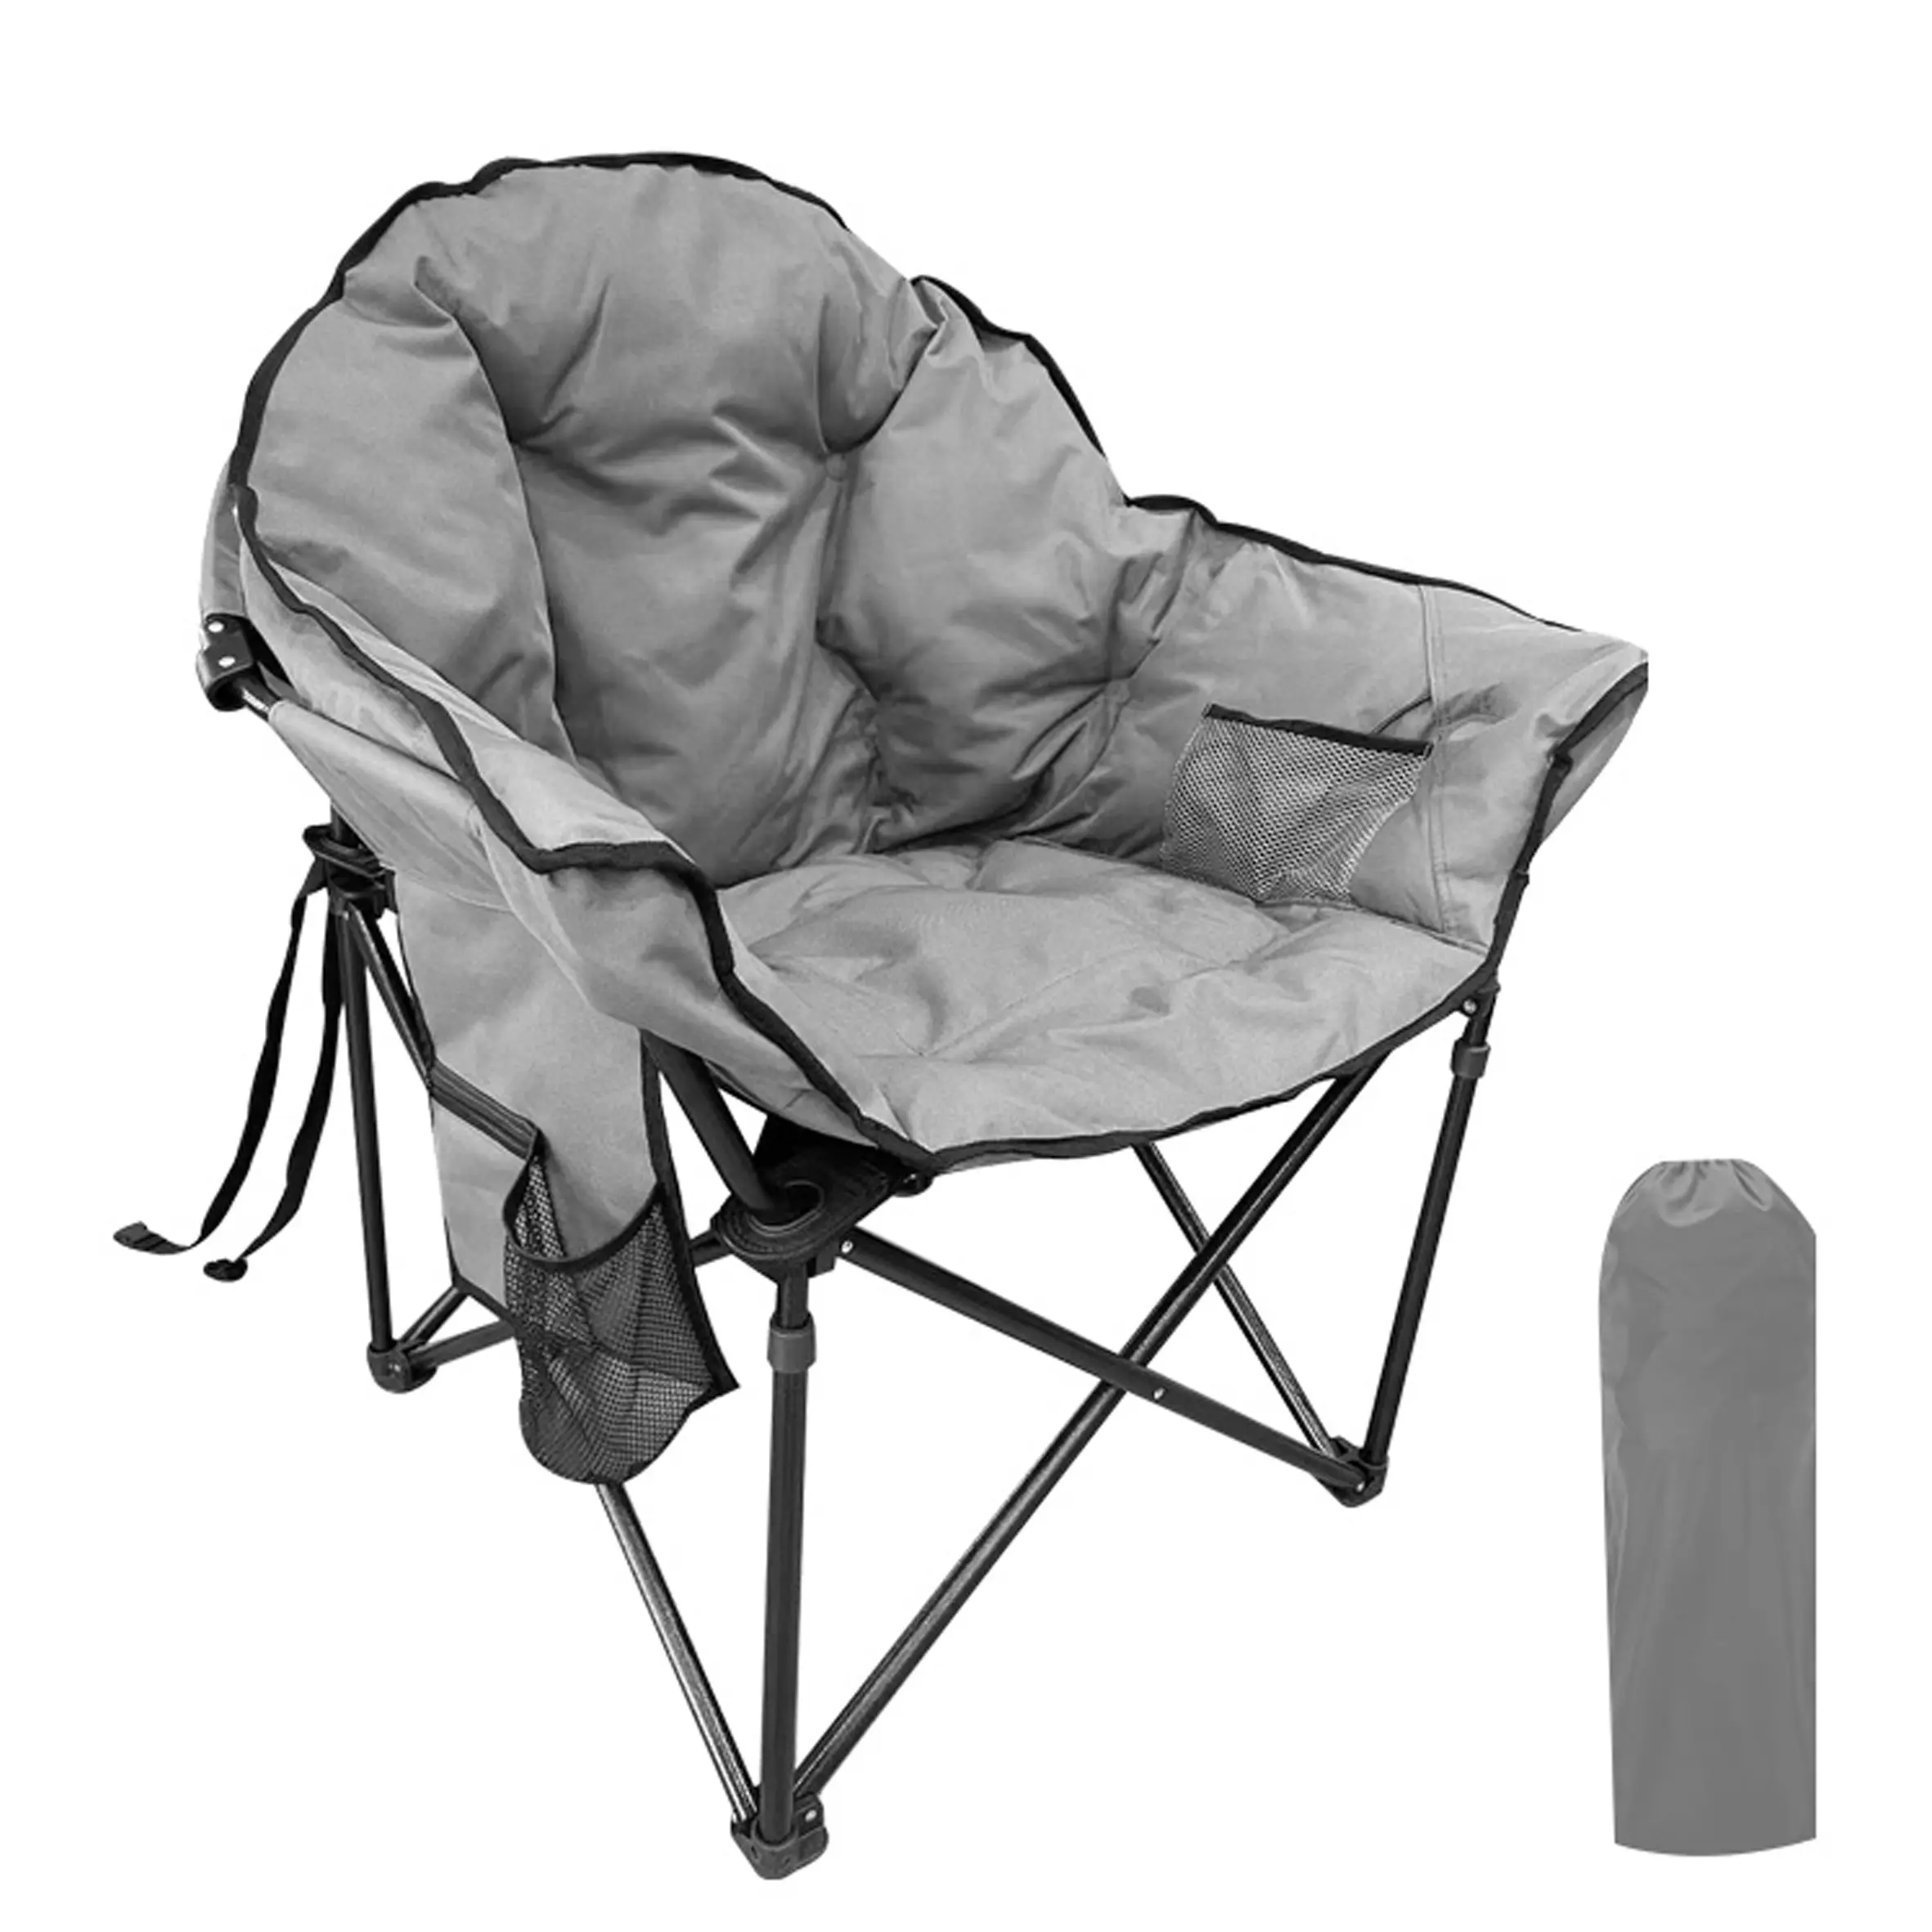 Portátil ao ar livre Folding Ice Pack piquenique Cadeira Encosto Isolamento Função Lazer, Camping Pesca Cadeira com Saco De Armazenamento/